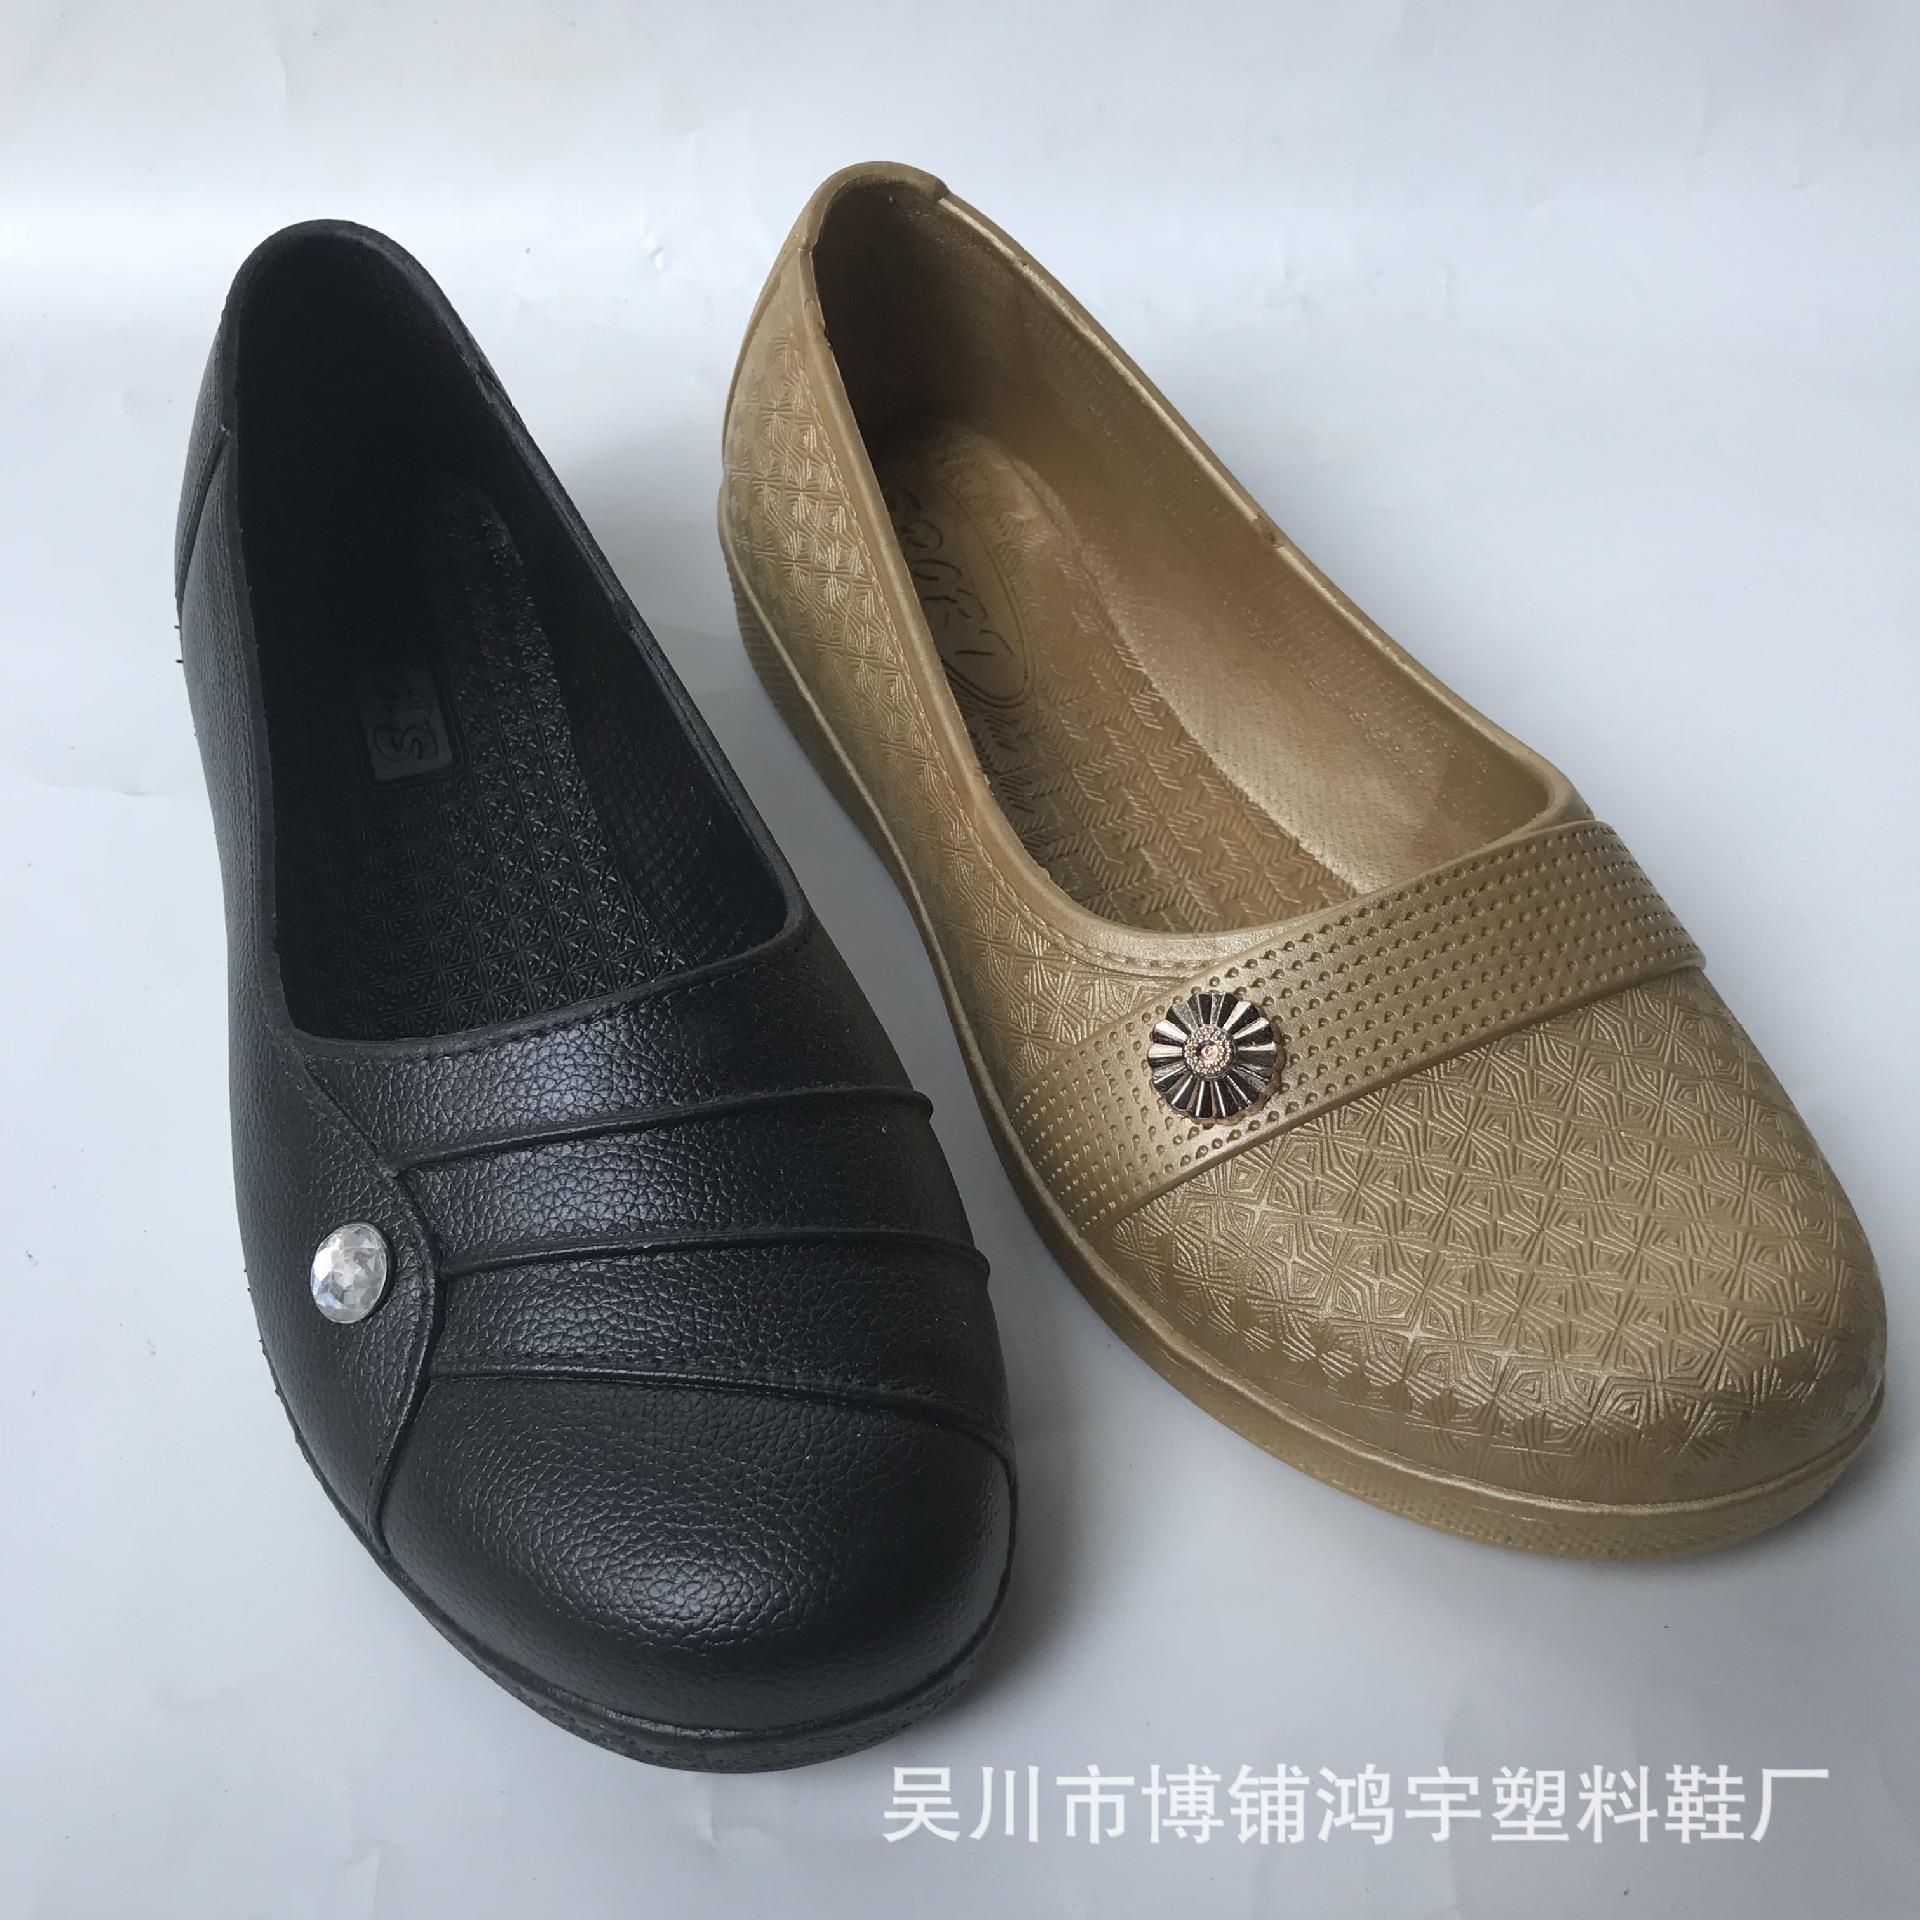 2018夏季新款女秋鞋热卖妇女秋鞋中年妈妈大码休闲鞋包跟女式秋鞋